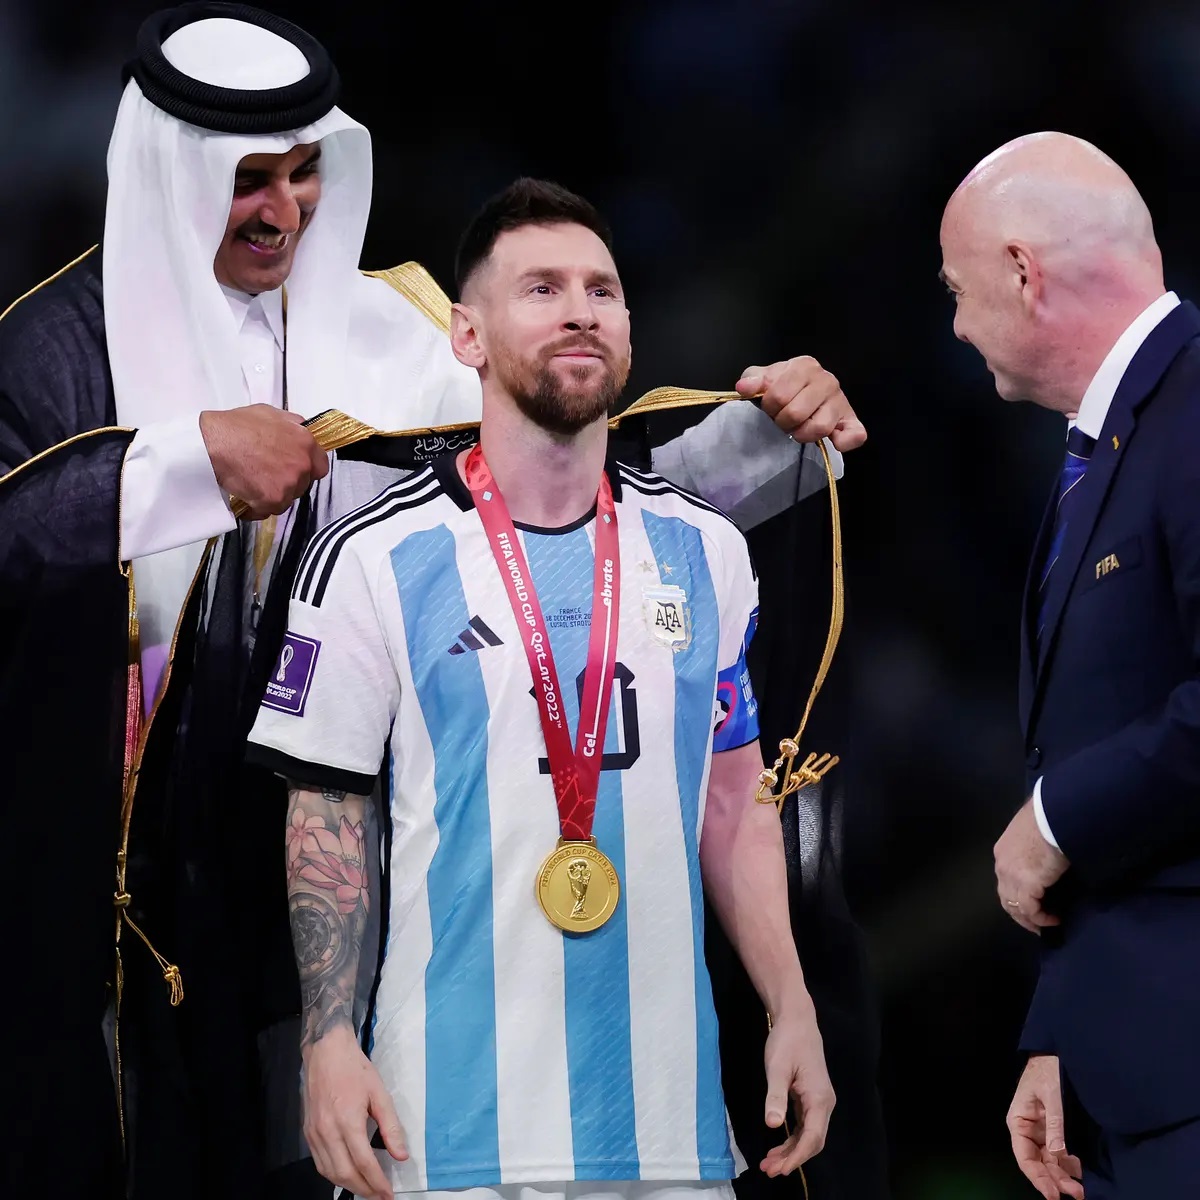 Để cổ động cho đội tuyển Argentina, Messi thường xuyên xuất hiện với áo choàng đen cùng các cđv trên khán đài. Hãy xem hình ảnh của anh ta khiến tất cả cảm thấy hào hứng và đam mê bóng đá.